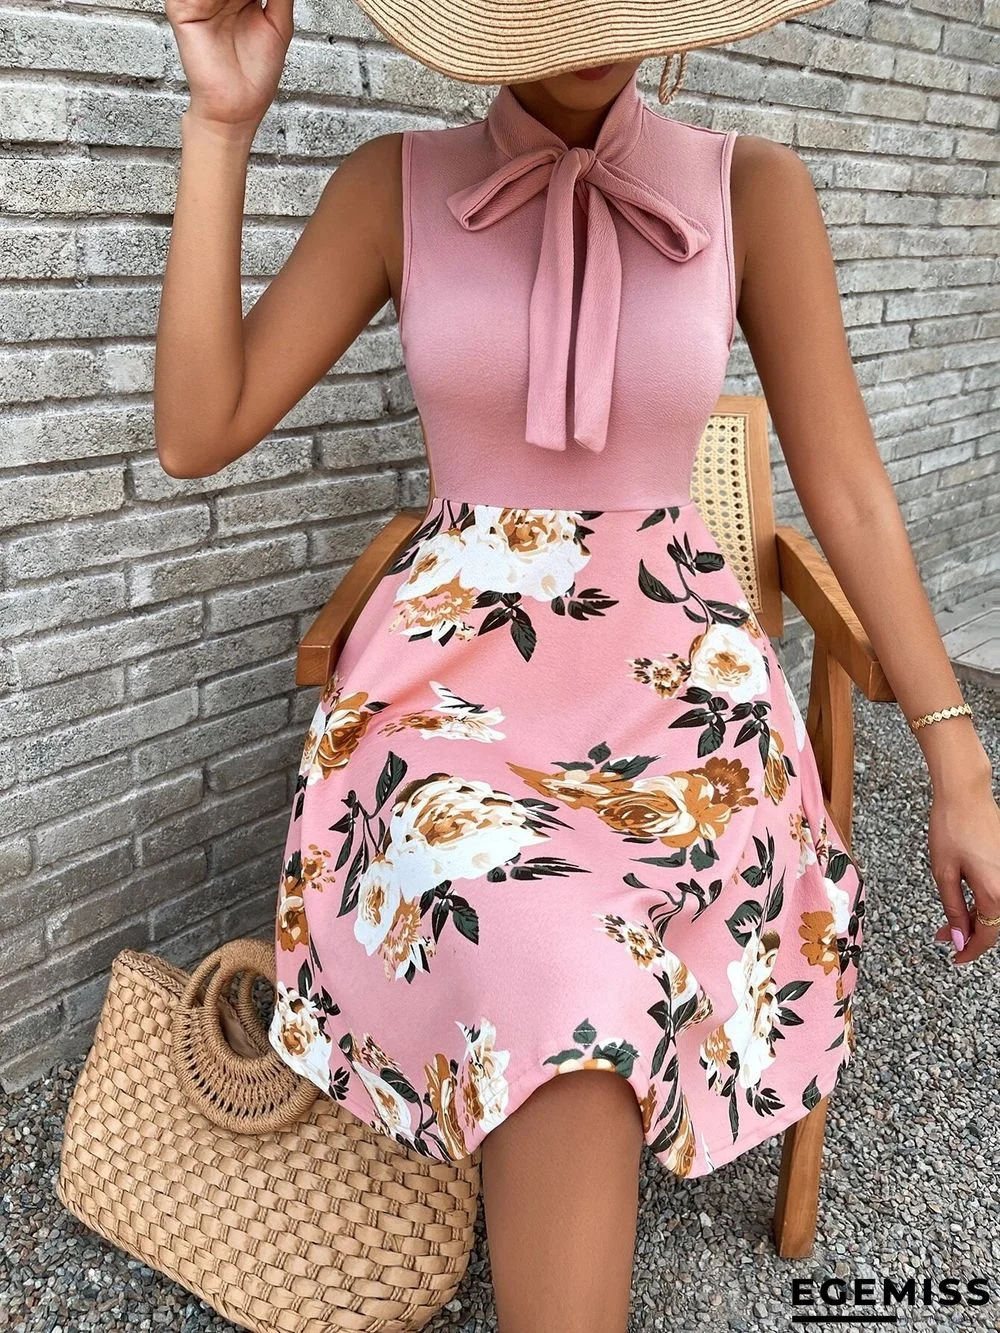 New Printed Short Skirt Bow Tie Dress | EGEMISS